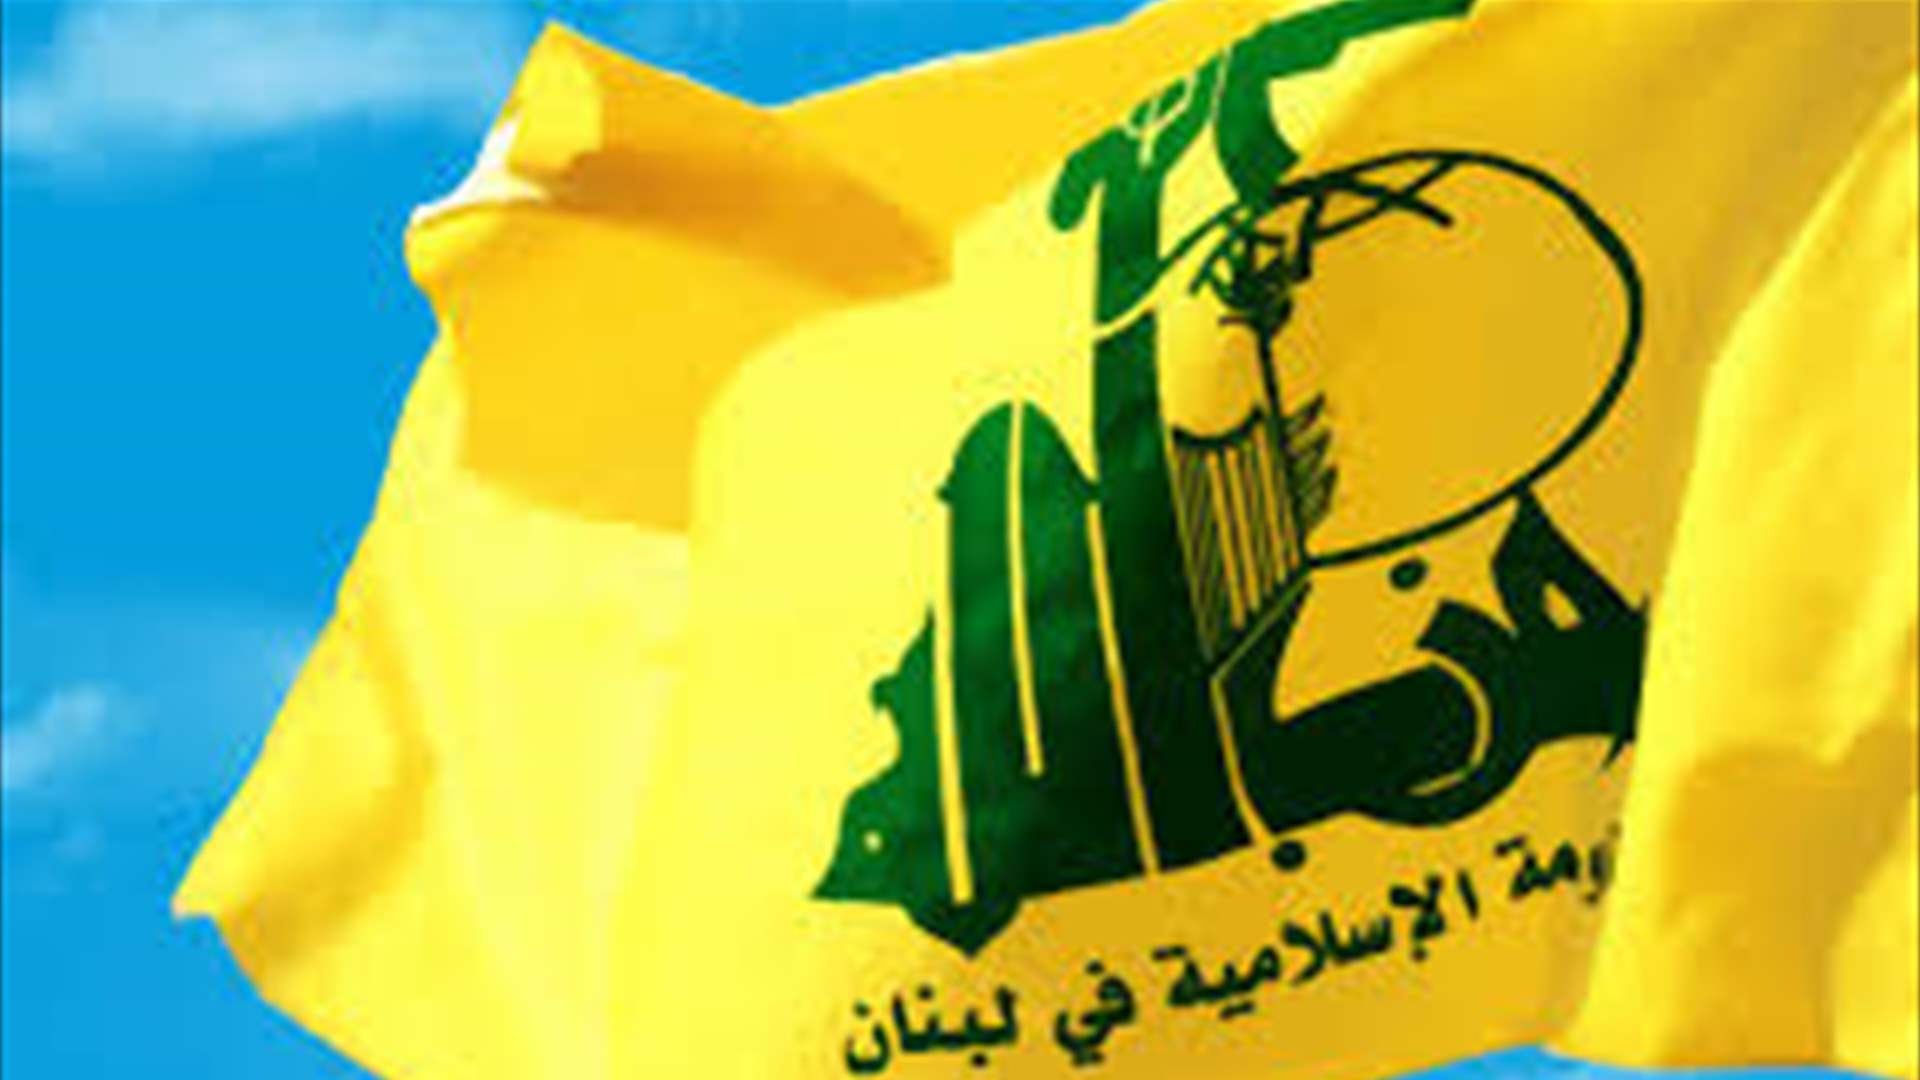 أميركا تعلن عن اتهامات بالإرهاب ضد عضو في حزب الله